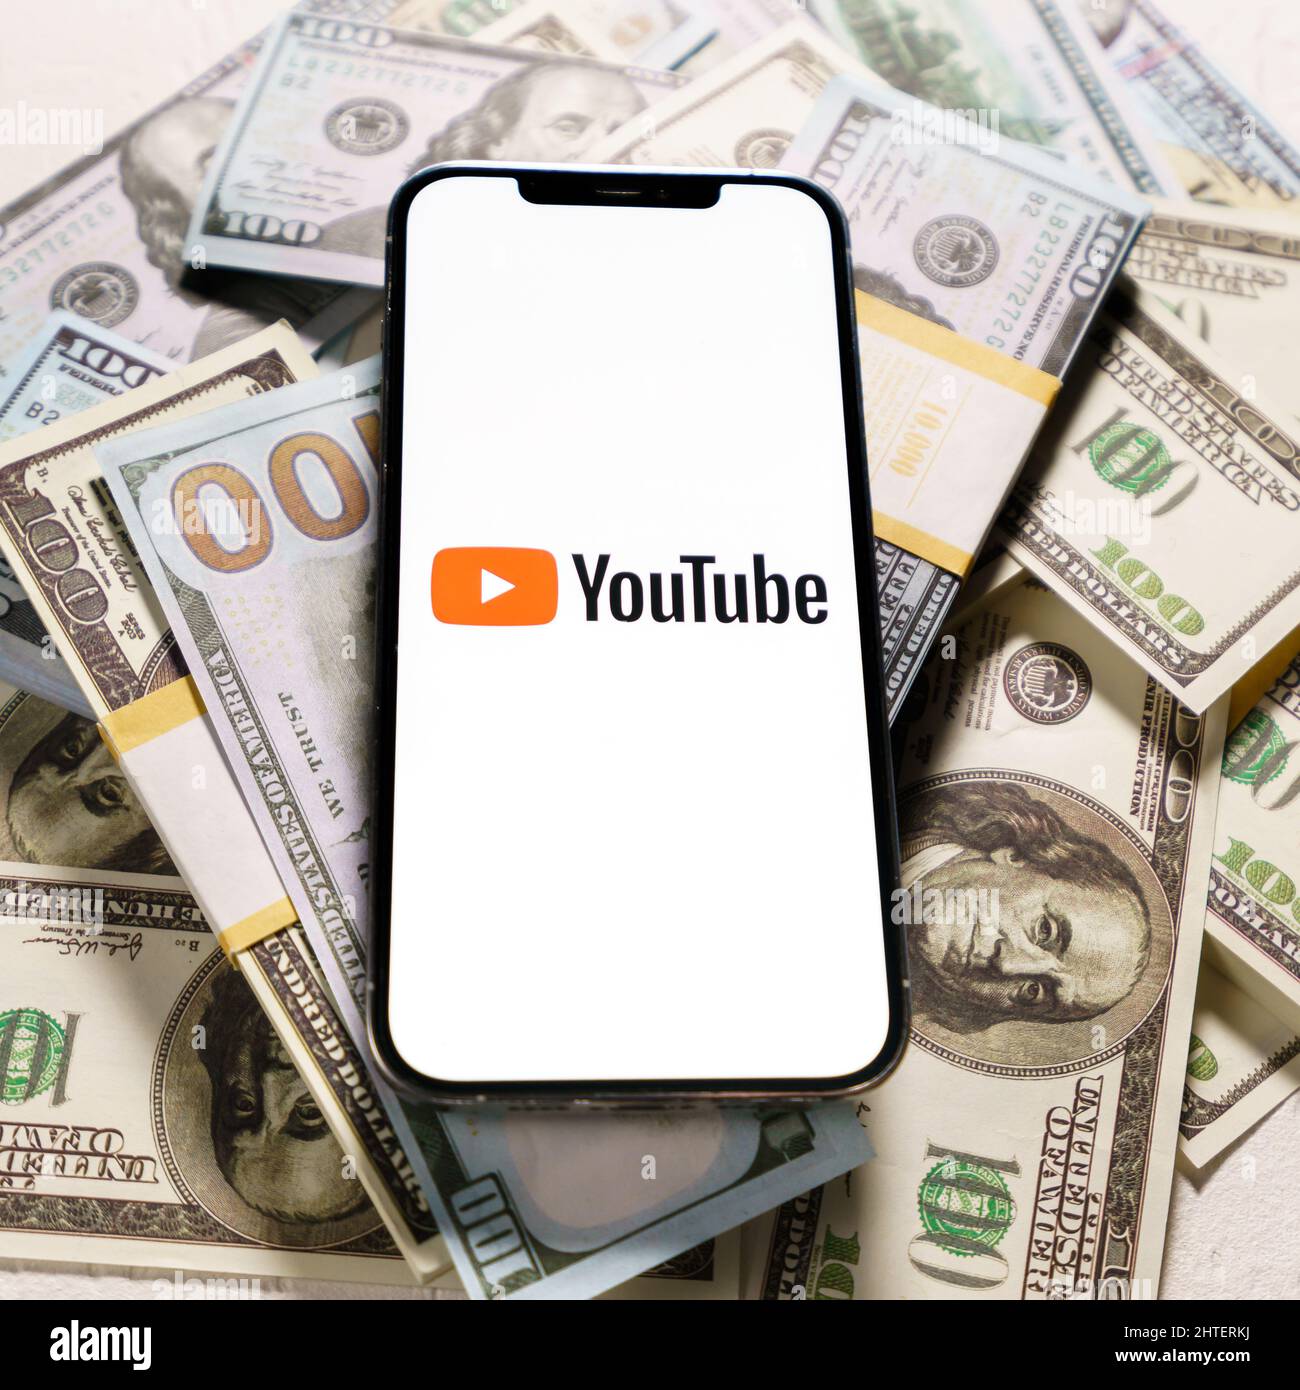 Berlin, Allemagne - 02 février 2022 : billets en dollars et logo YouTube à l'écran iPhone 12 Pro Max.YouTube est une application gratuite de partage de vidéos Banque D'Images